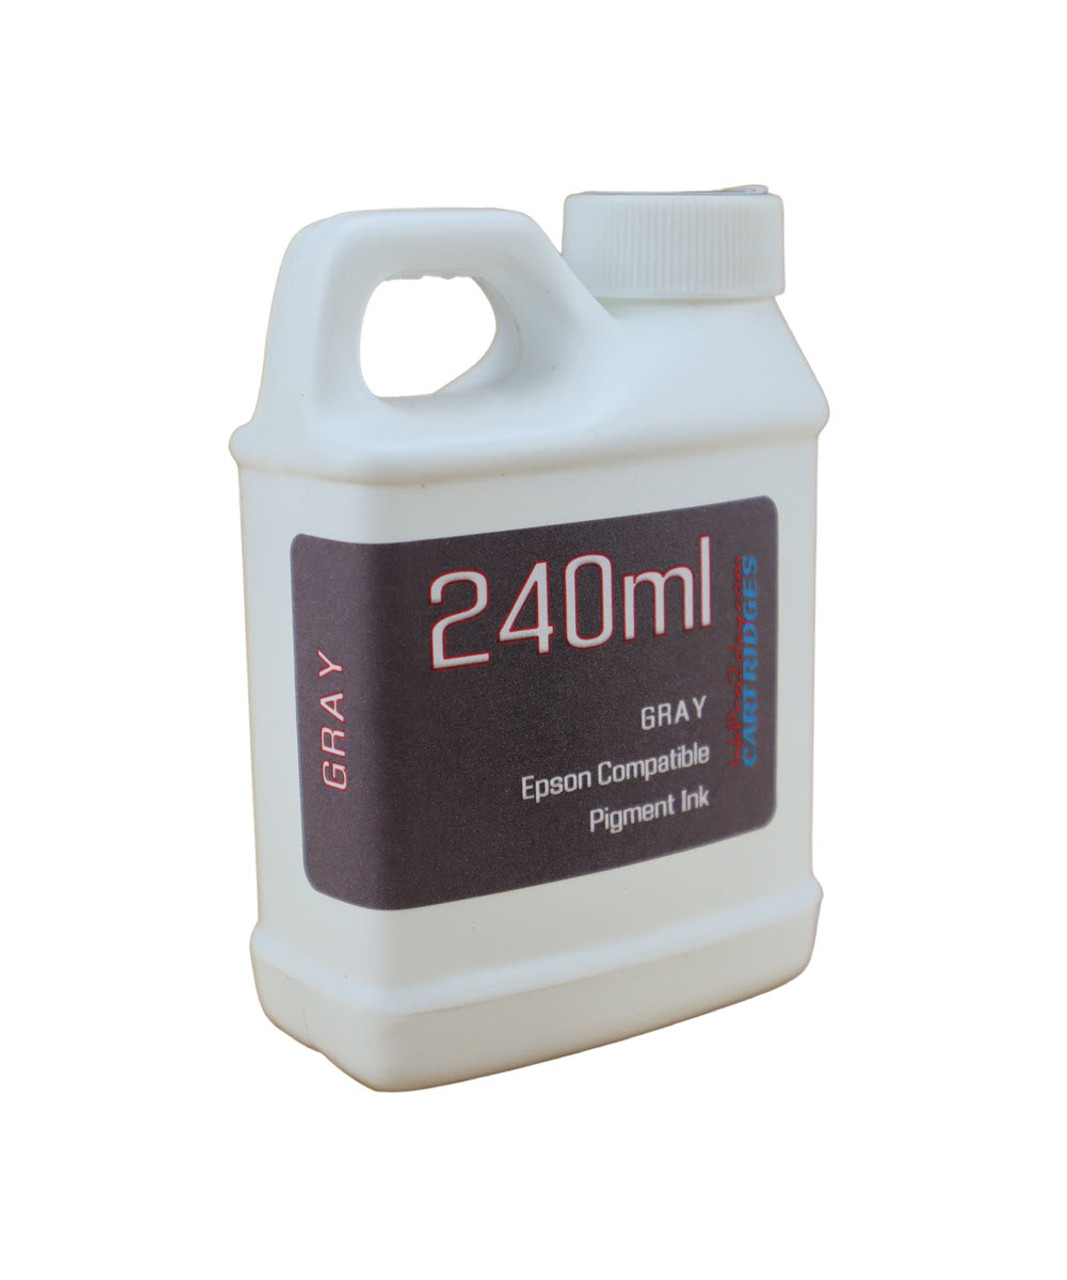 Gray Pigment Ink 240ml Bottle for EPSON EcoTank ET-8500 ET-8550 Printer